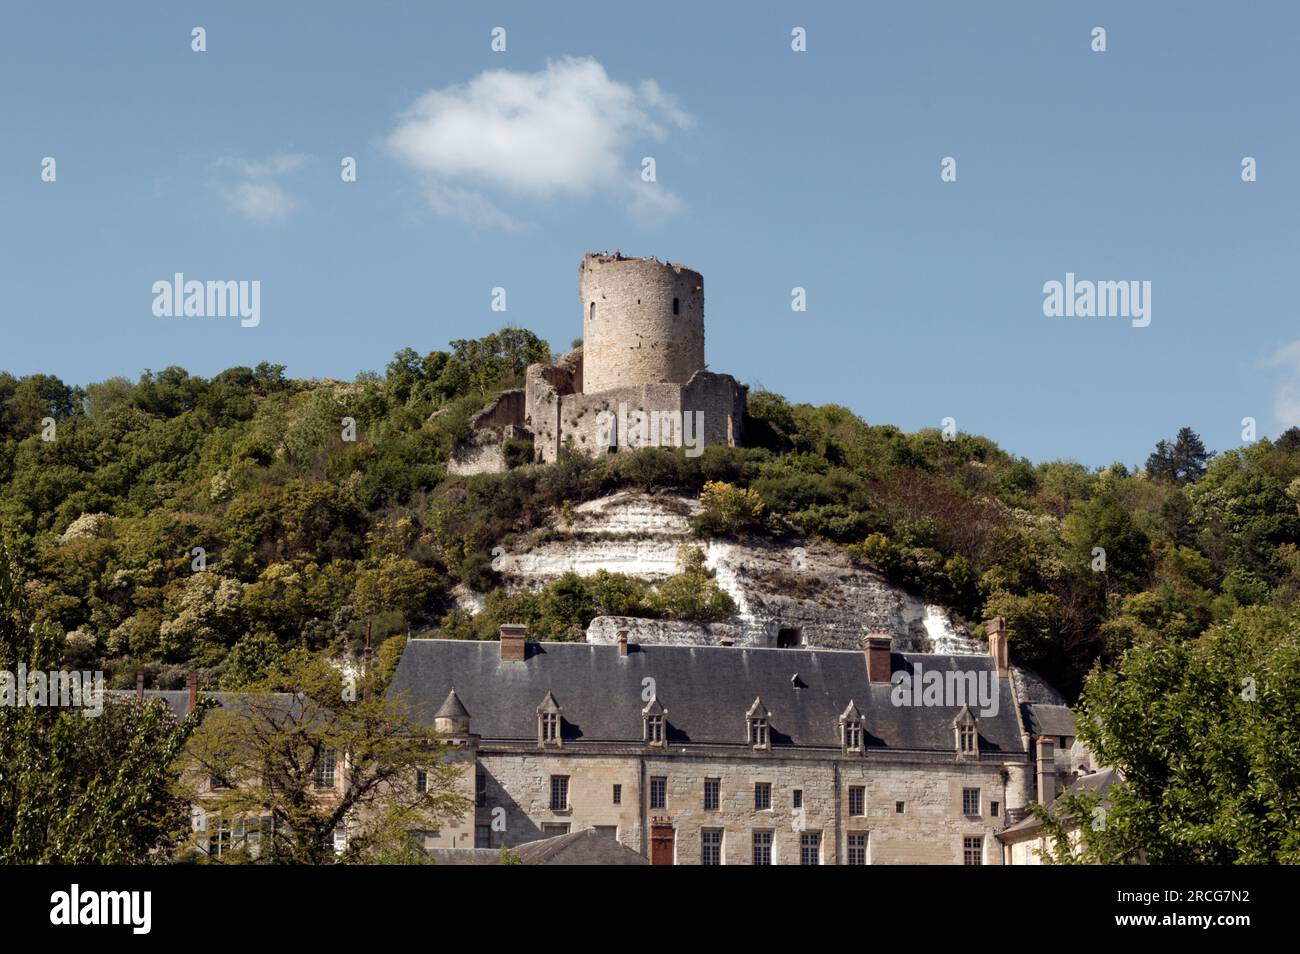 Old castle, La Roche-Guyon, Val d Oise, France Stock Photo